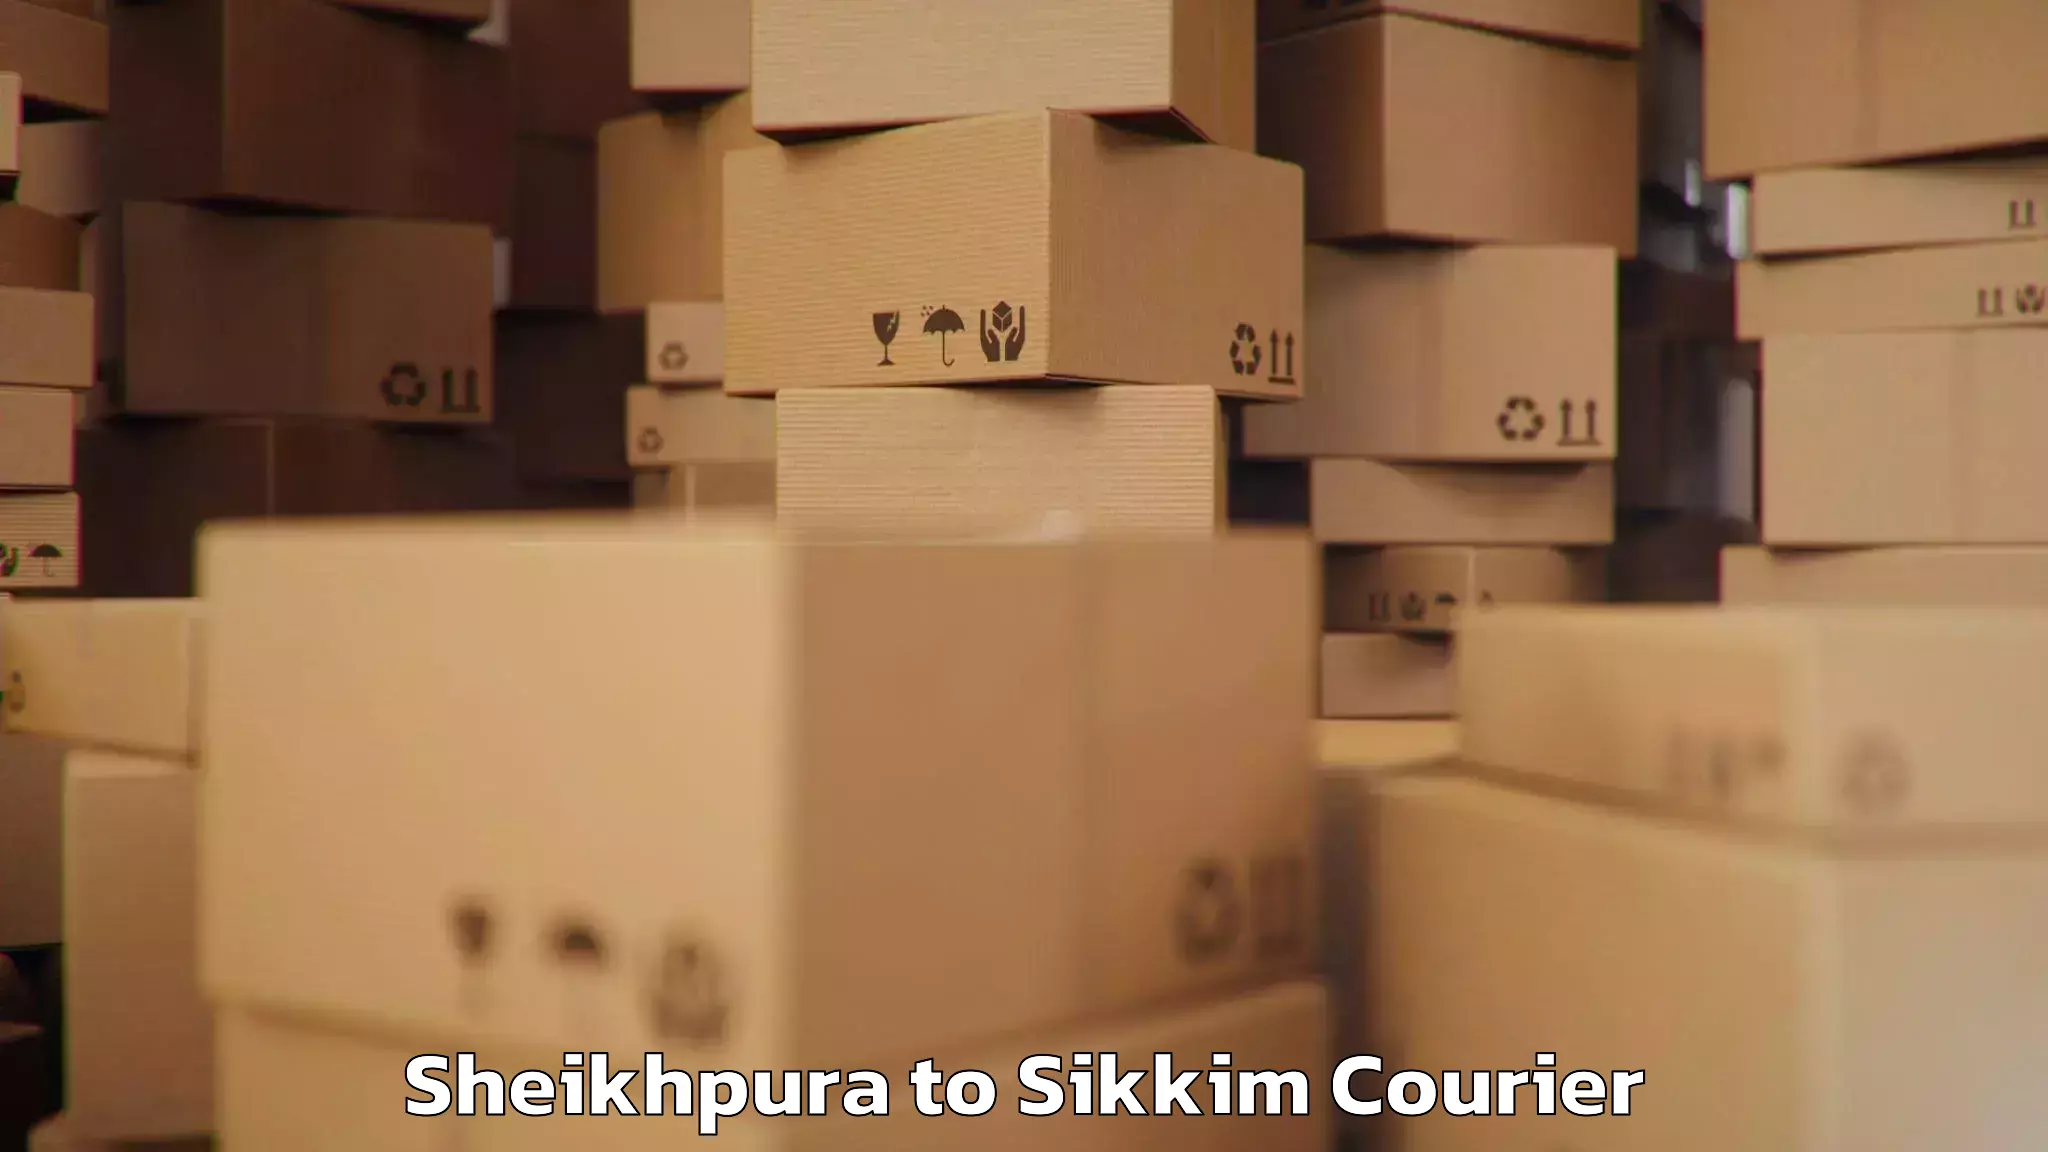 Luggage shipment specialists Sheikhpura to NIT Sikkim